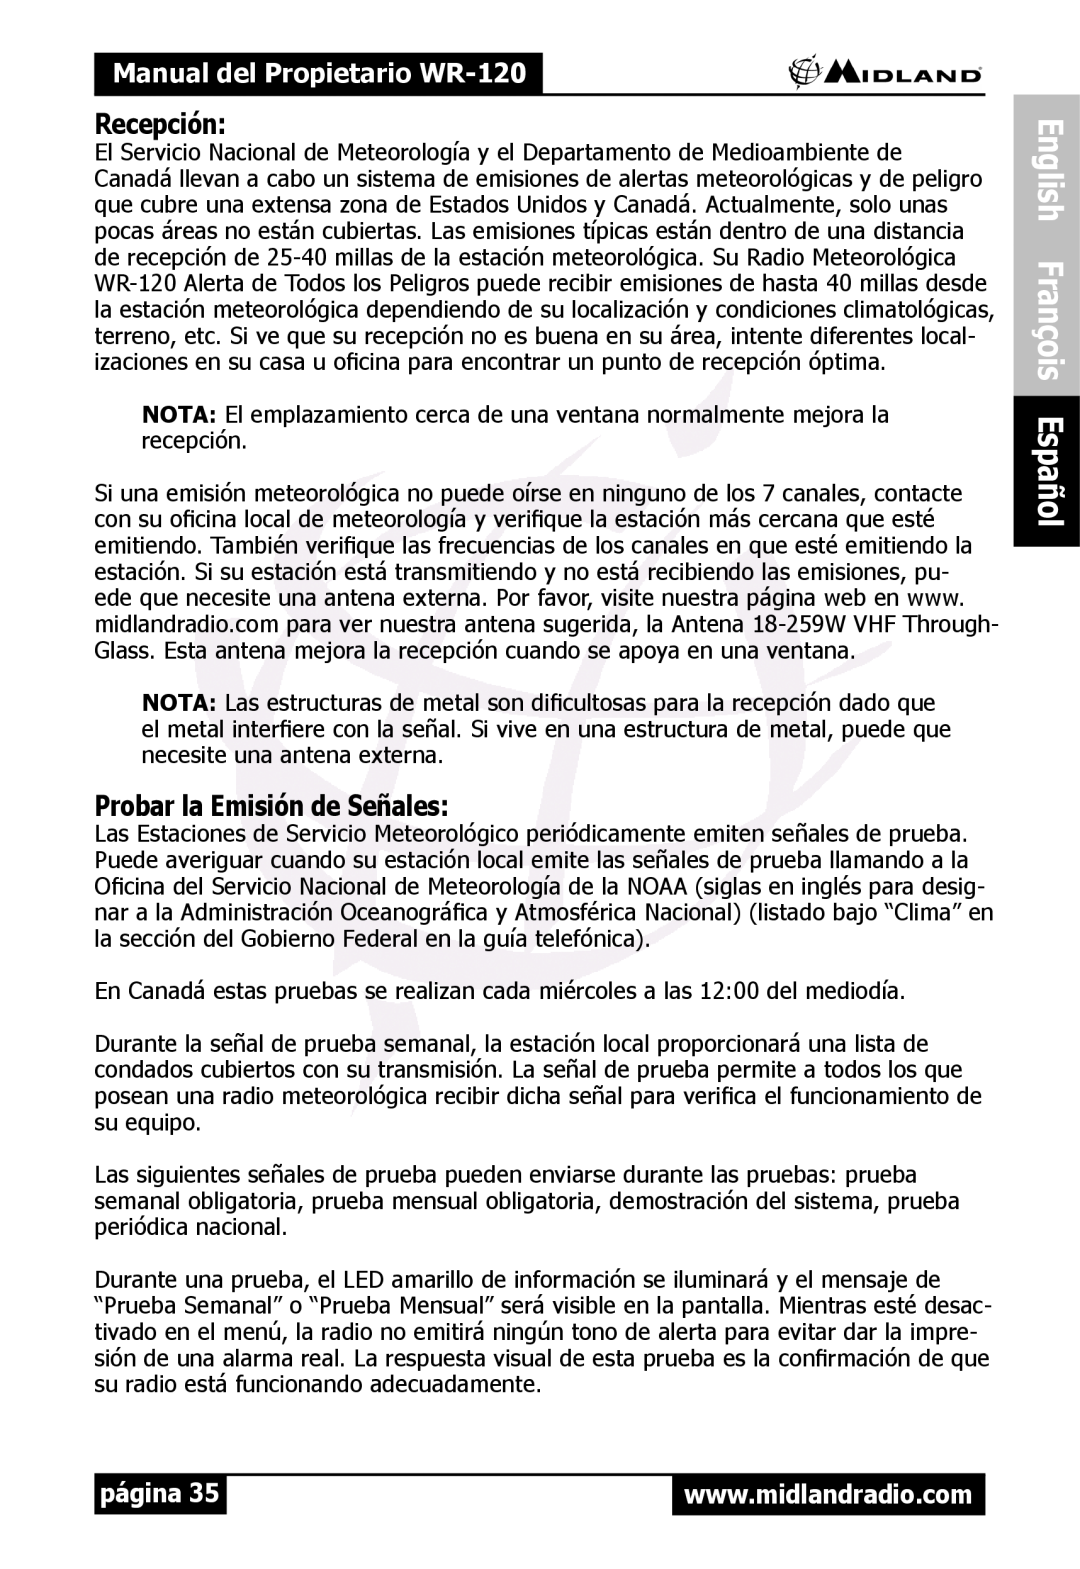 Midland Radio WR120 Recepción, Probar la Emisión de Señales, English François Español, Manual del Propietario WR-120 